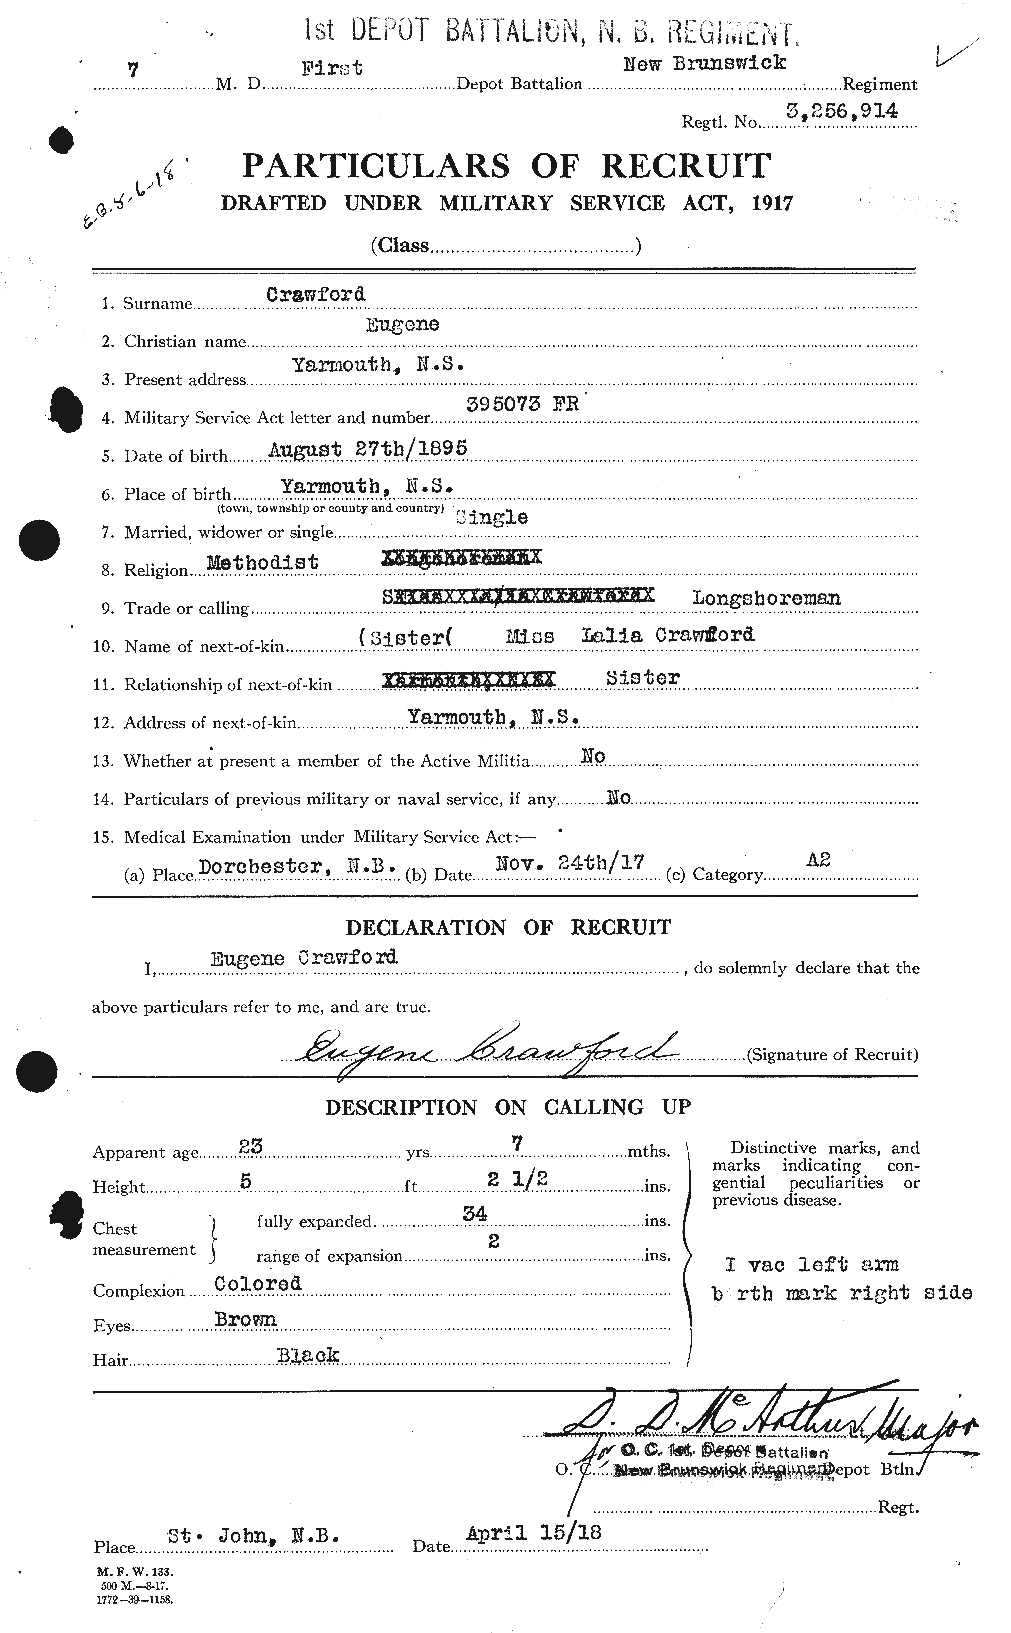 Dossiers du Personnel de la Première Guerre mondiale - CEC 060743a